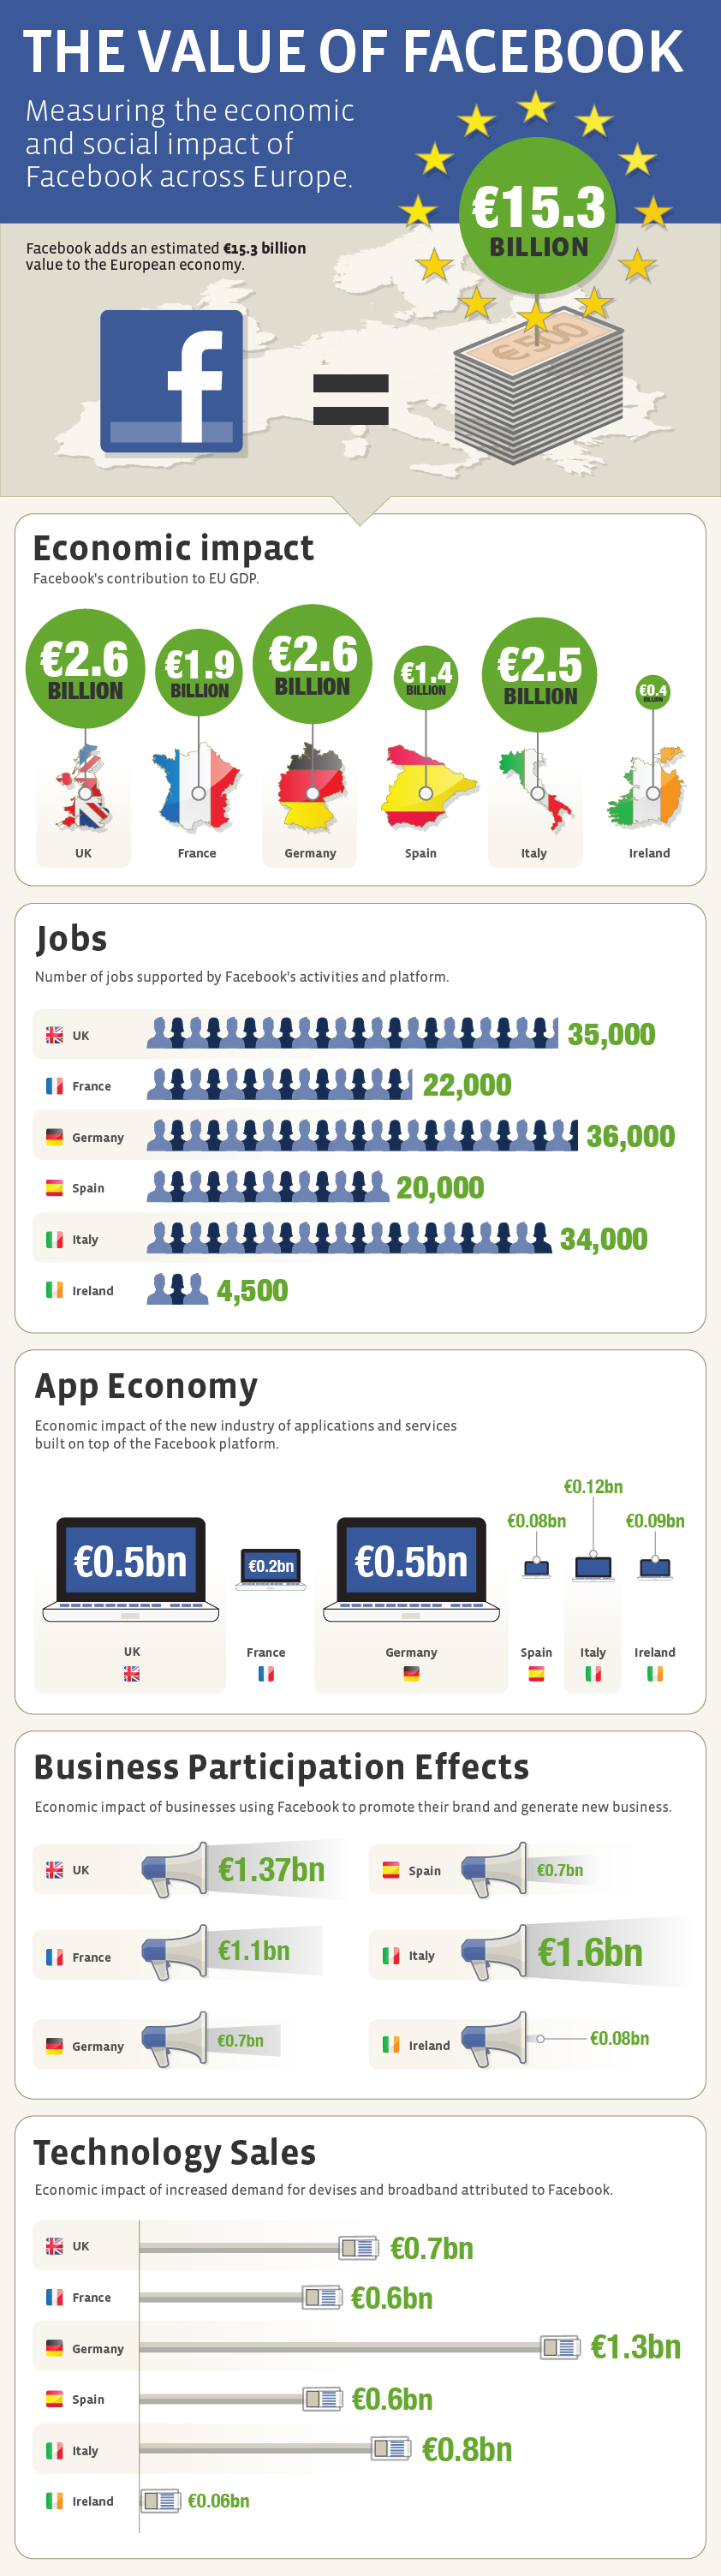 L'impact économique de Facebook à travers l'Europe